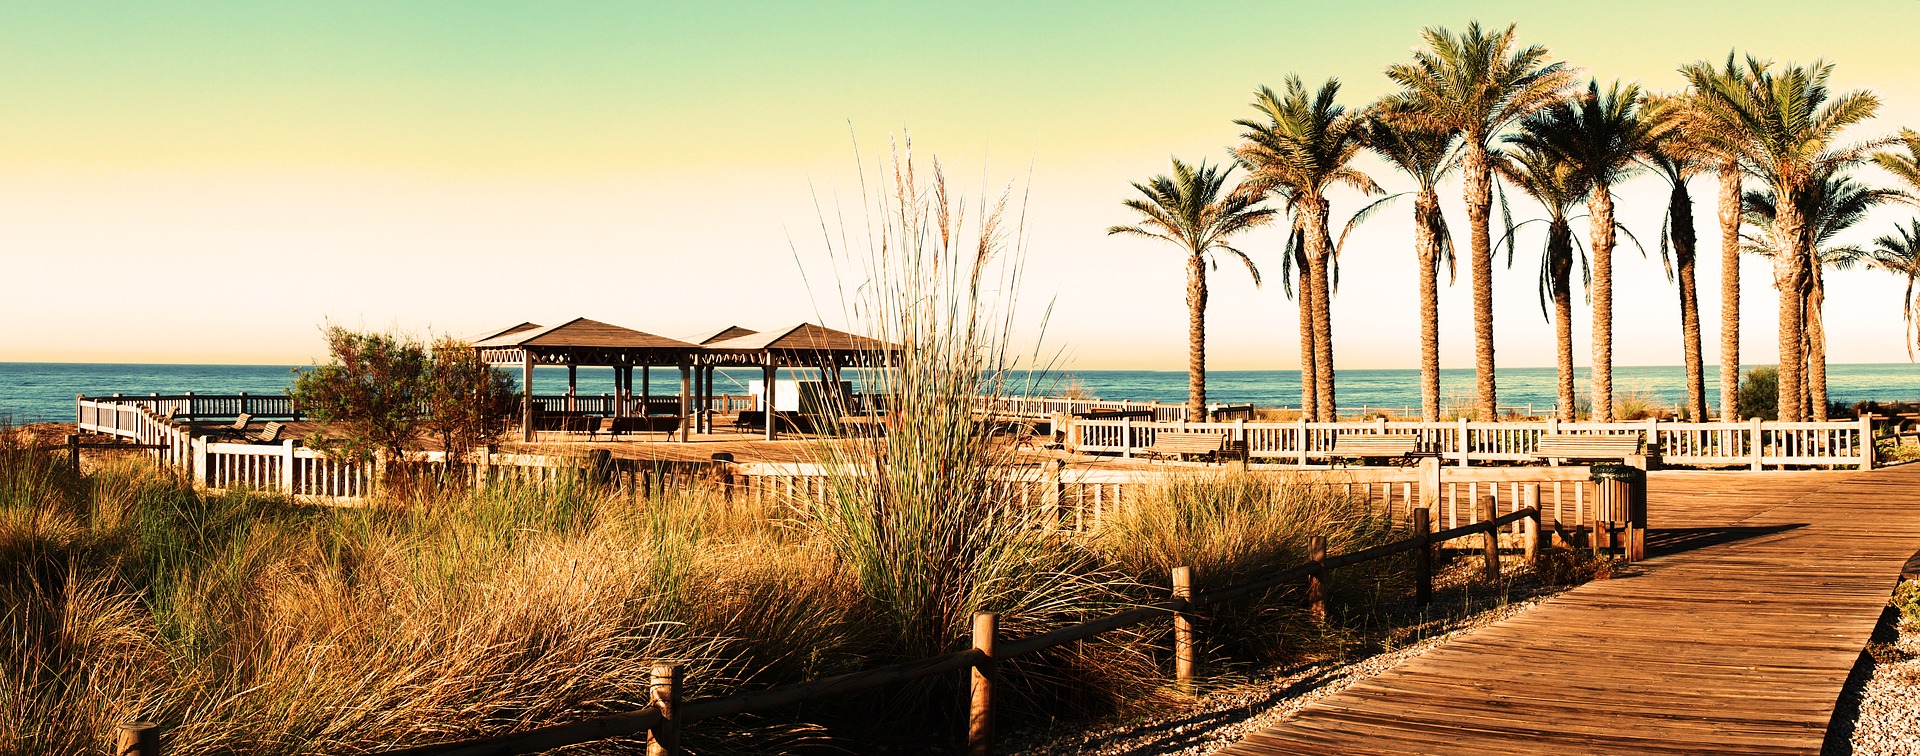 Costa del Sol - Reise nach Malaga ab 33,98€ Flug & Hotel